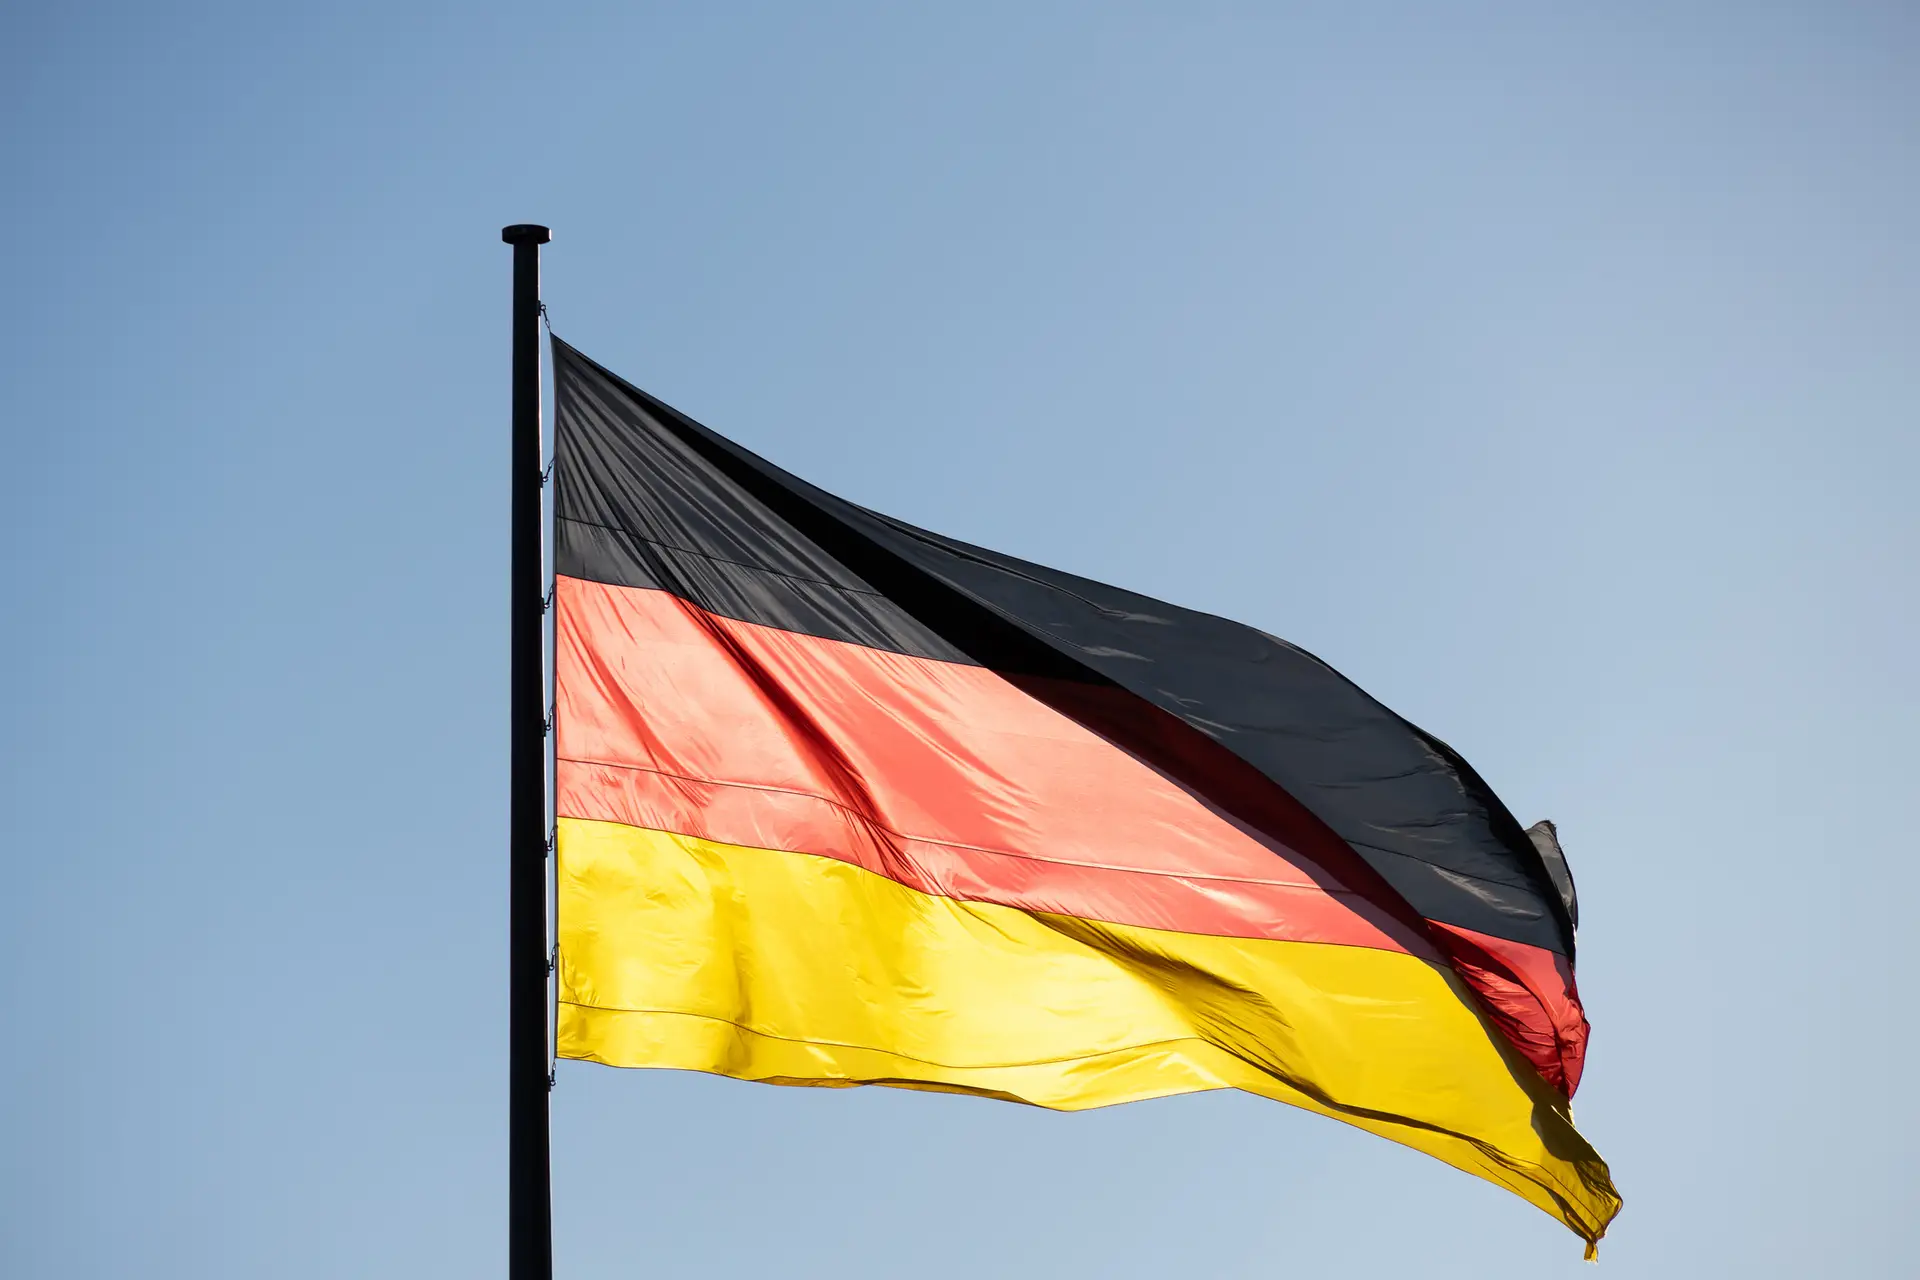 Produção industrial alemã sofre queda inesperada em março